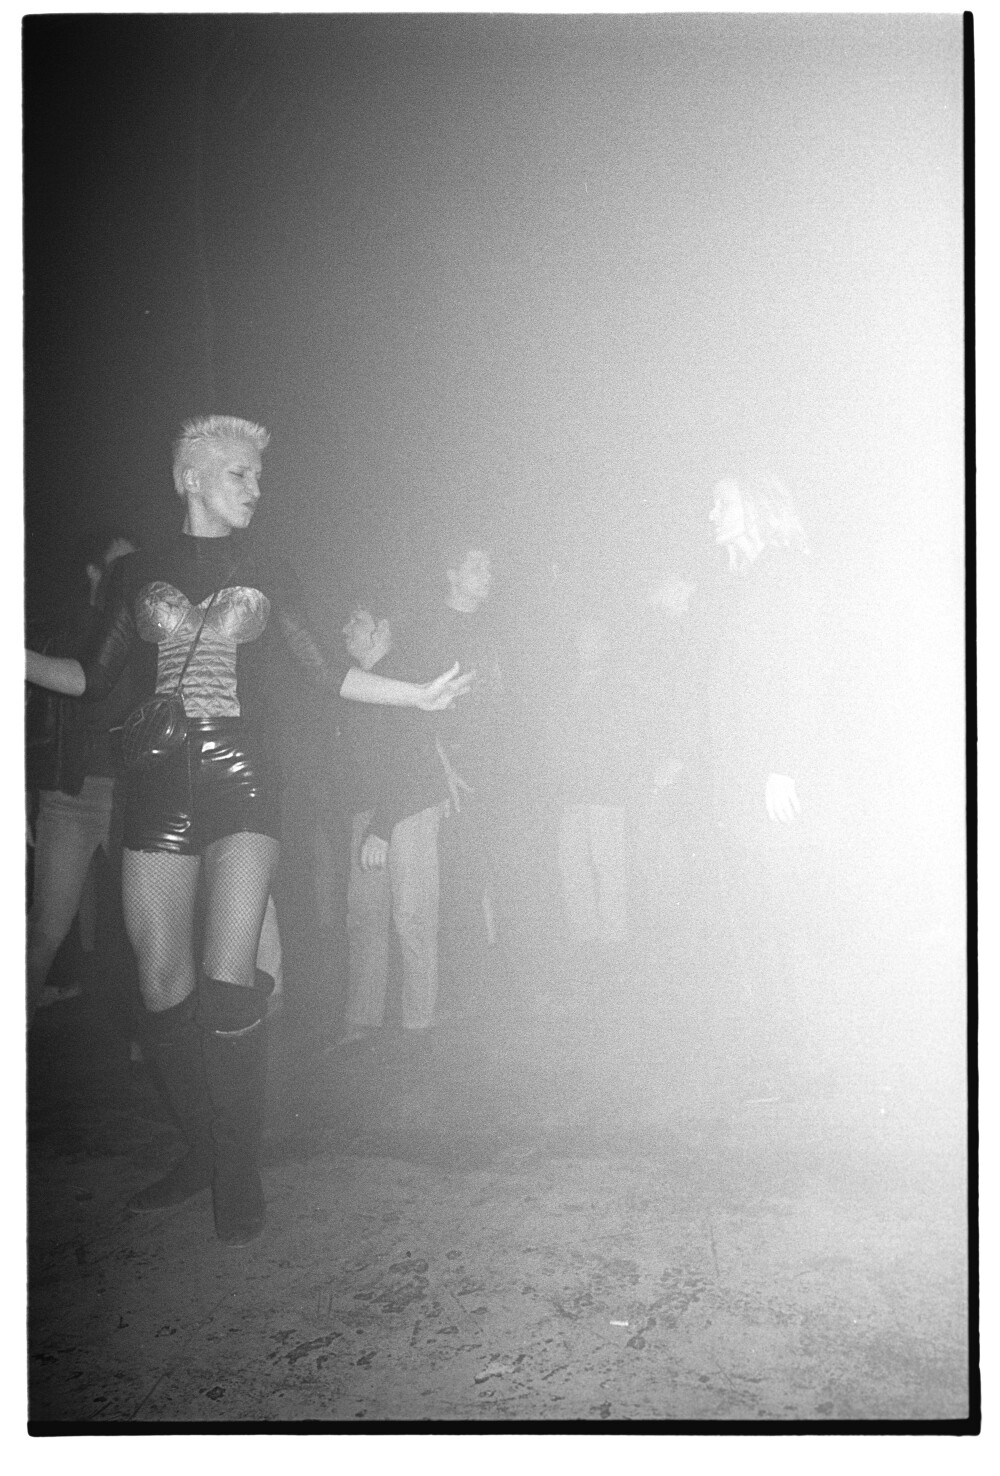 The Shamen 21.11.1992 [oder] 22.11.1992 [?] I N 4 (Rita Maier / Schwules Museum Berlin RR-P)